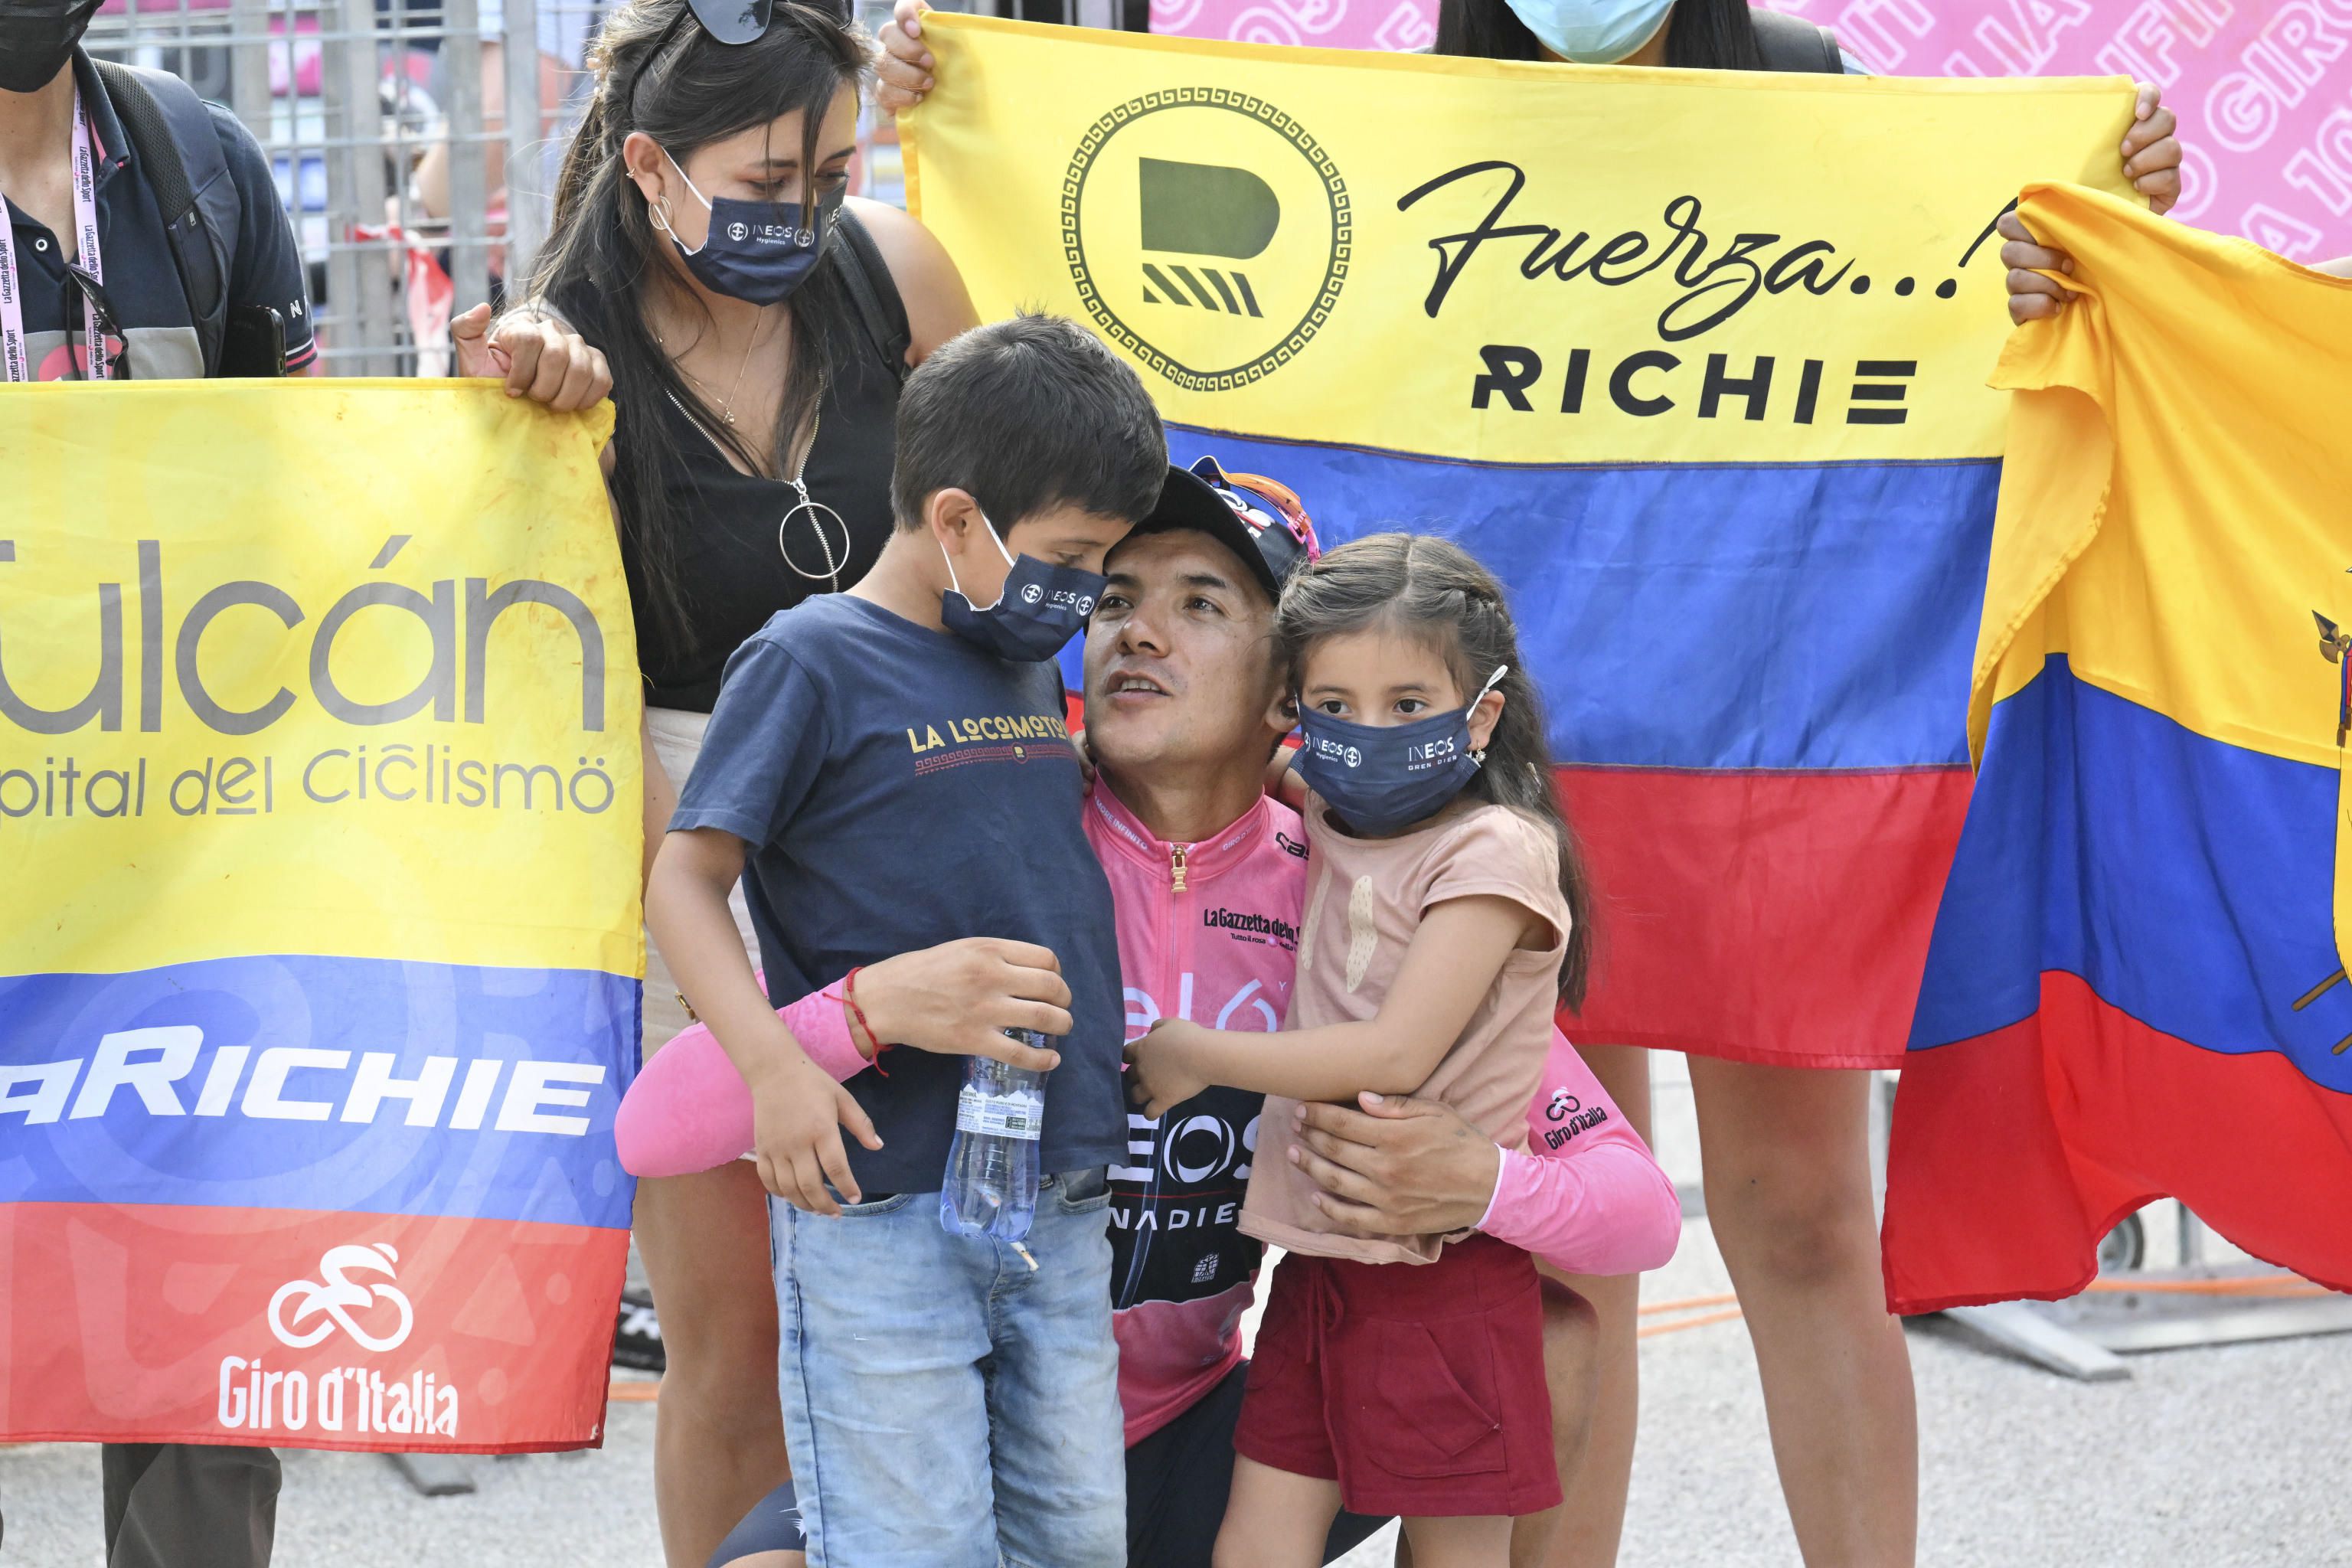 Pantalla gigante y buena vibra: hinchas apoyarán a Richard Carapaz desde Tulcán para que logre el milagro y conquiste su segundo Giro